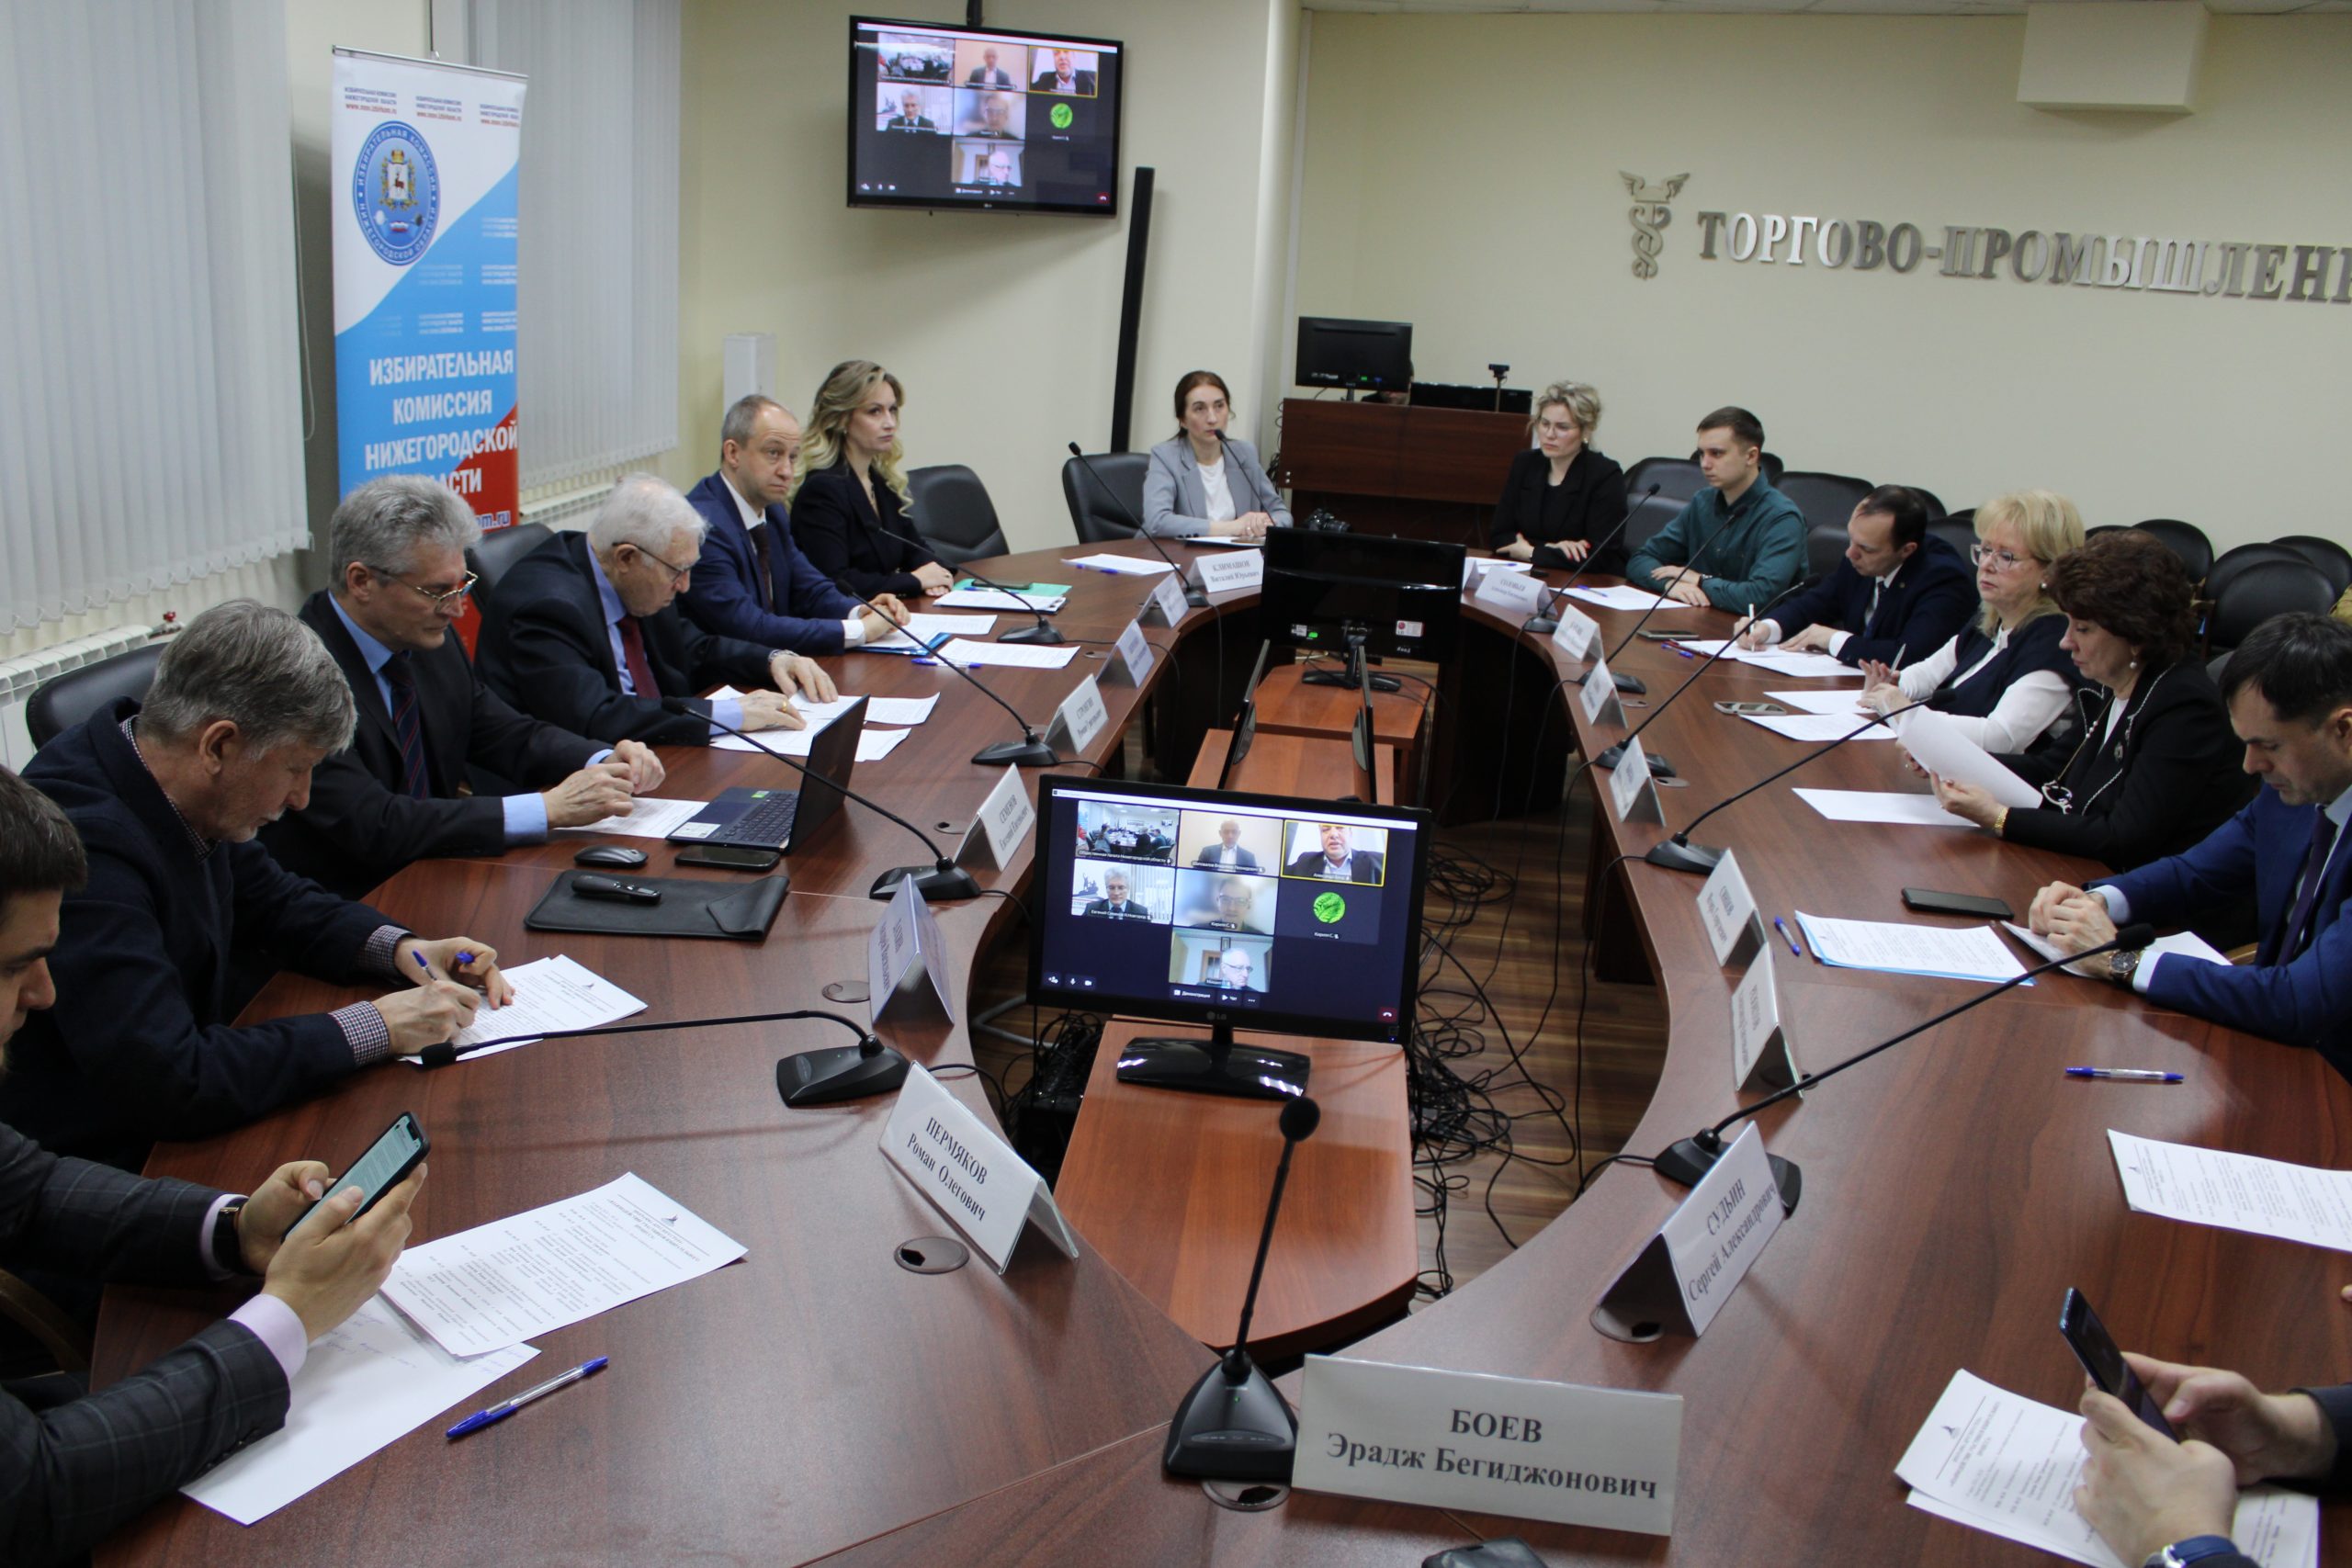 Представитель ЦИК России отметил Нижегородскую область в числе лидеров по оснащению избирательных участков средствами видеонаблюдения